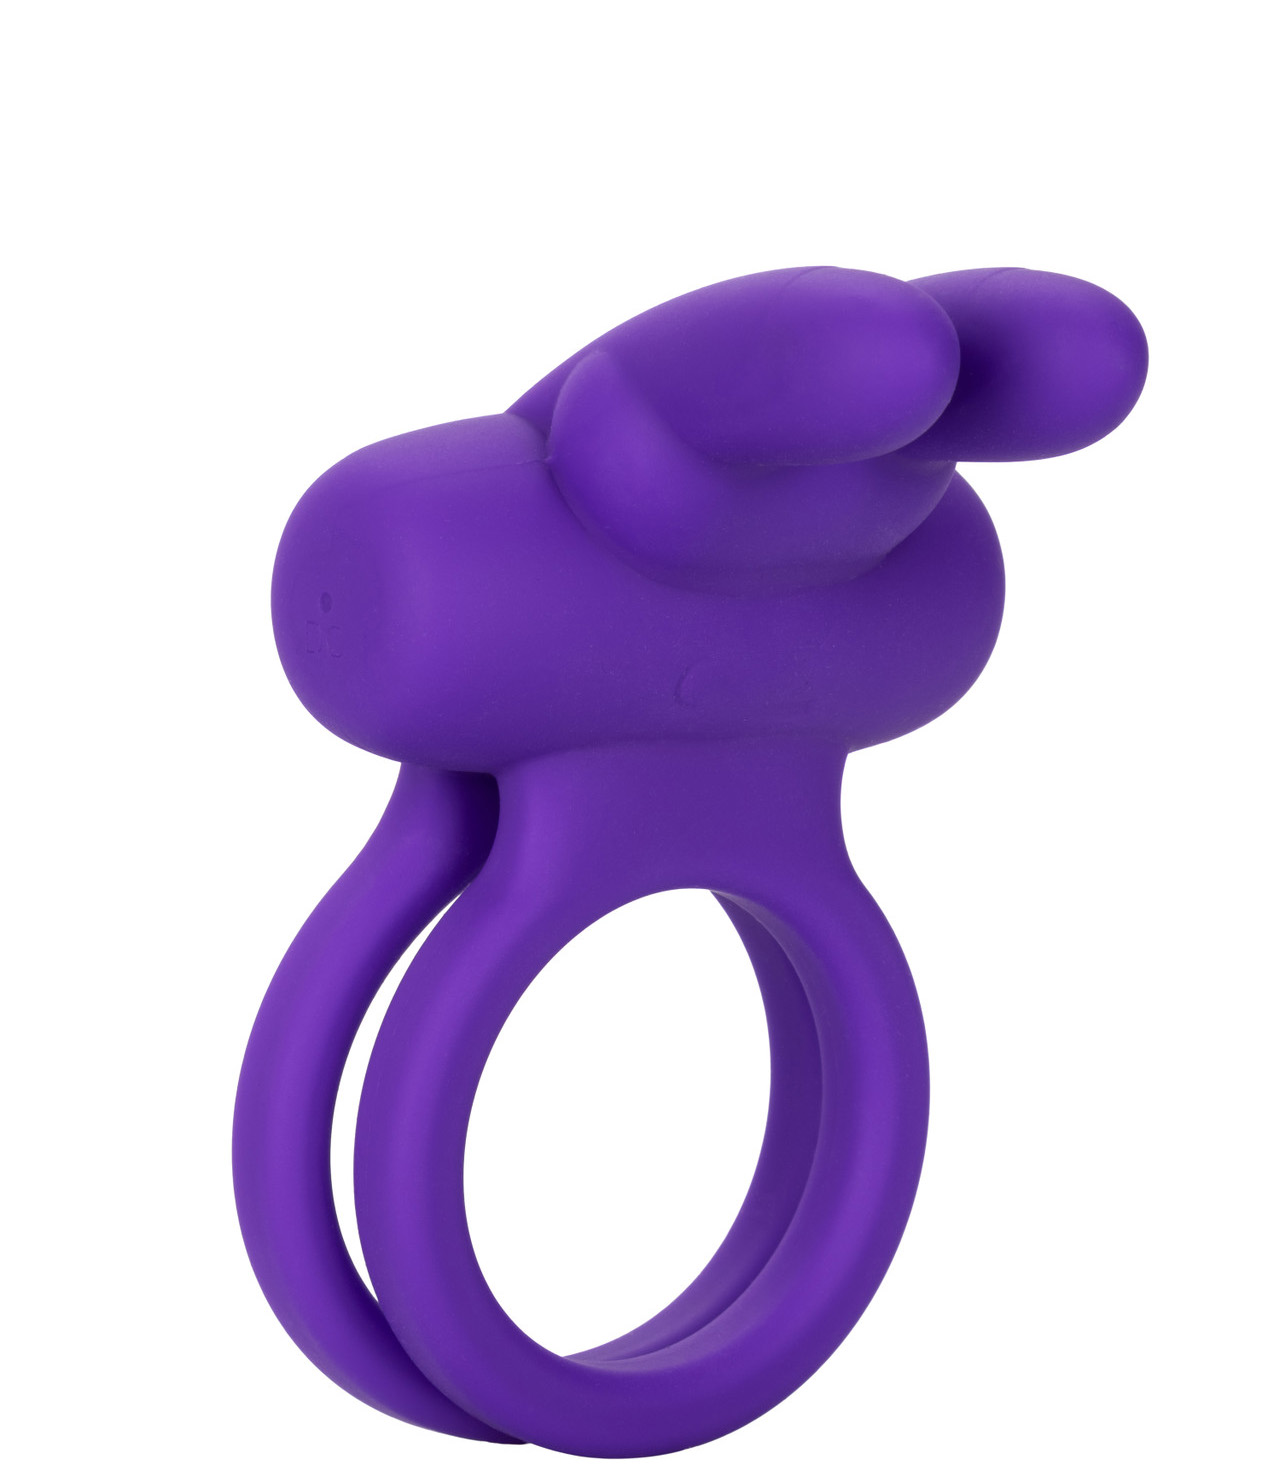 Виброкольцо с подхватом мошонки CalExotics Dual Rockin Rabbit, фиолетовое